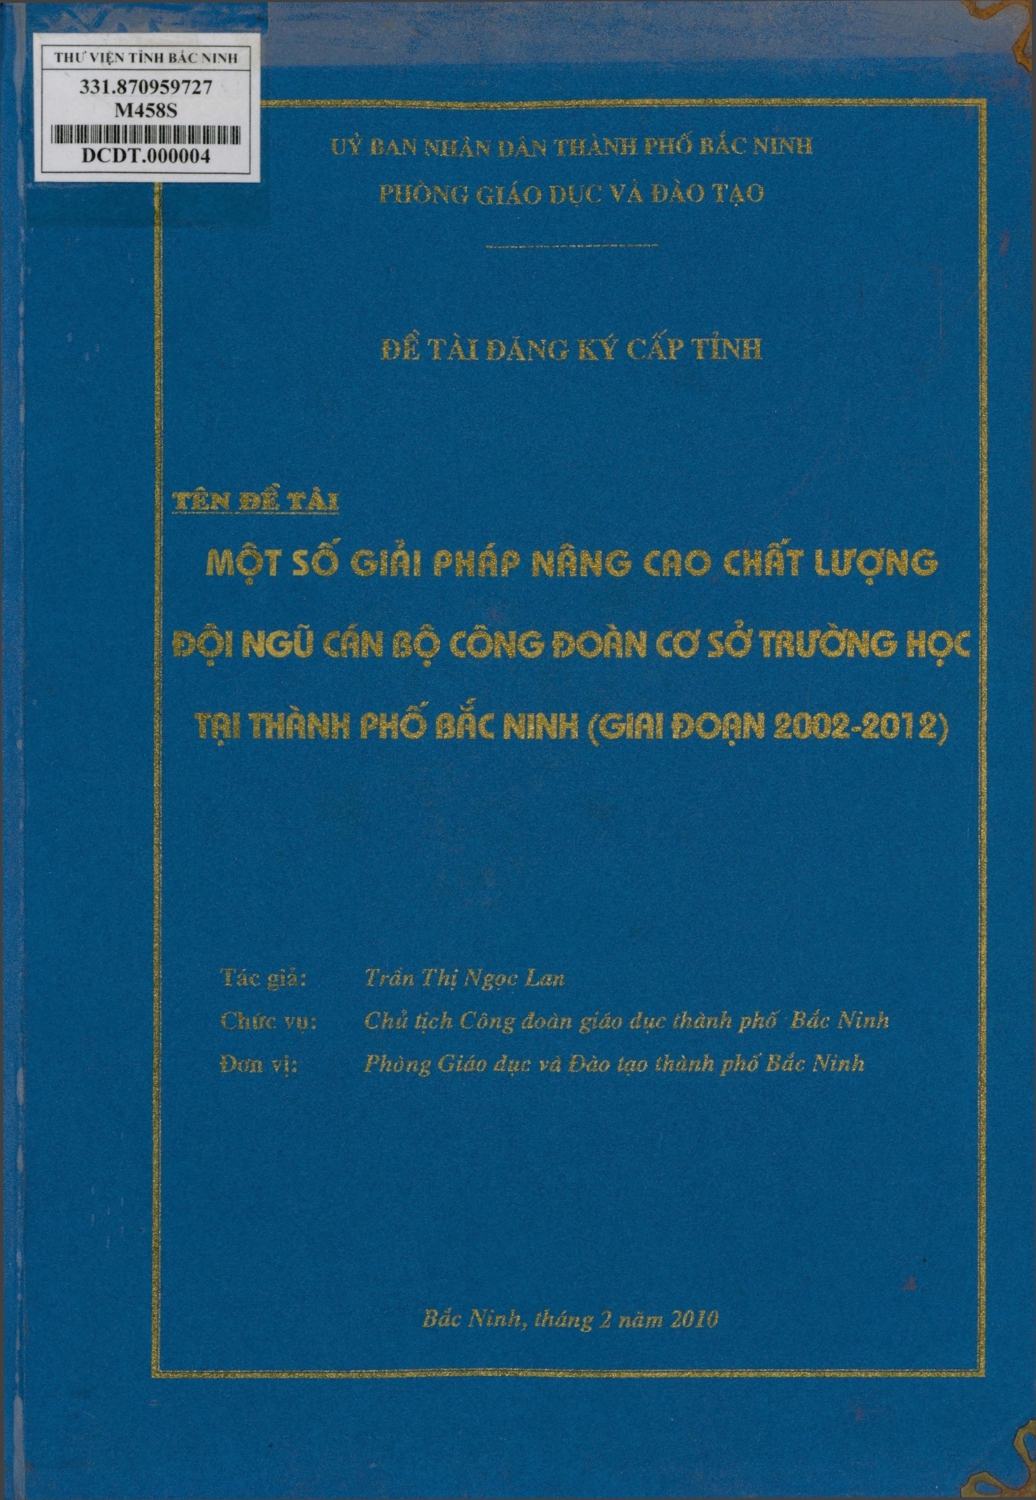 Một số giải pháp nâng cao chất lượng đội ngũ cán bộ công đoàn cơ sở trường học tại thành phố Bắc Ninh (giai đoạn 2002 - 2012)